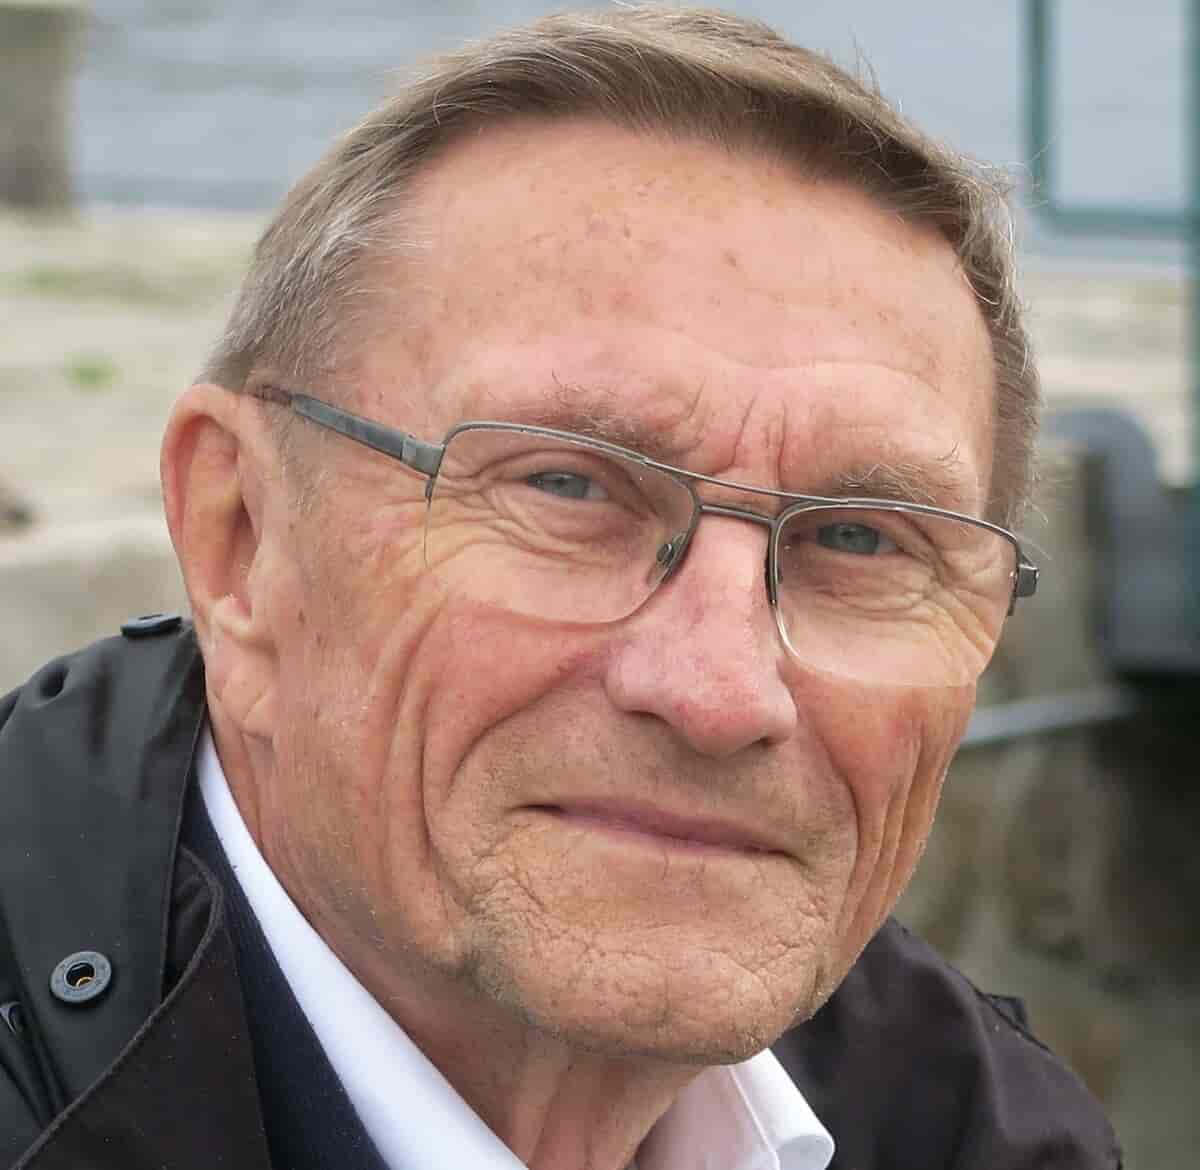 Finn Kamper-Jørgensen